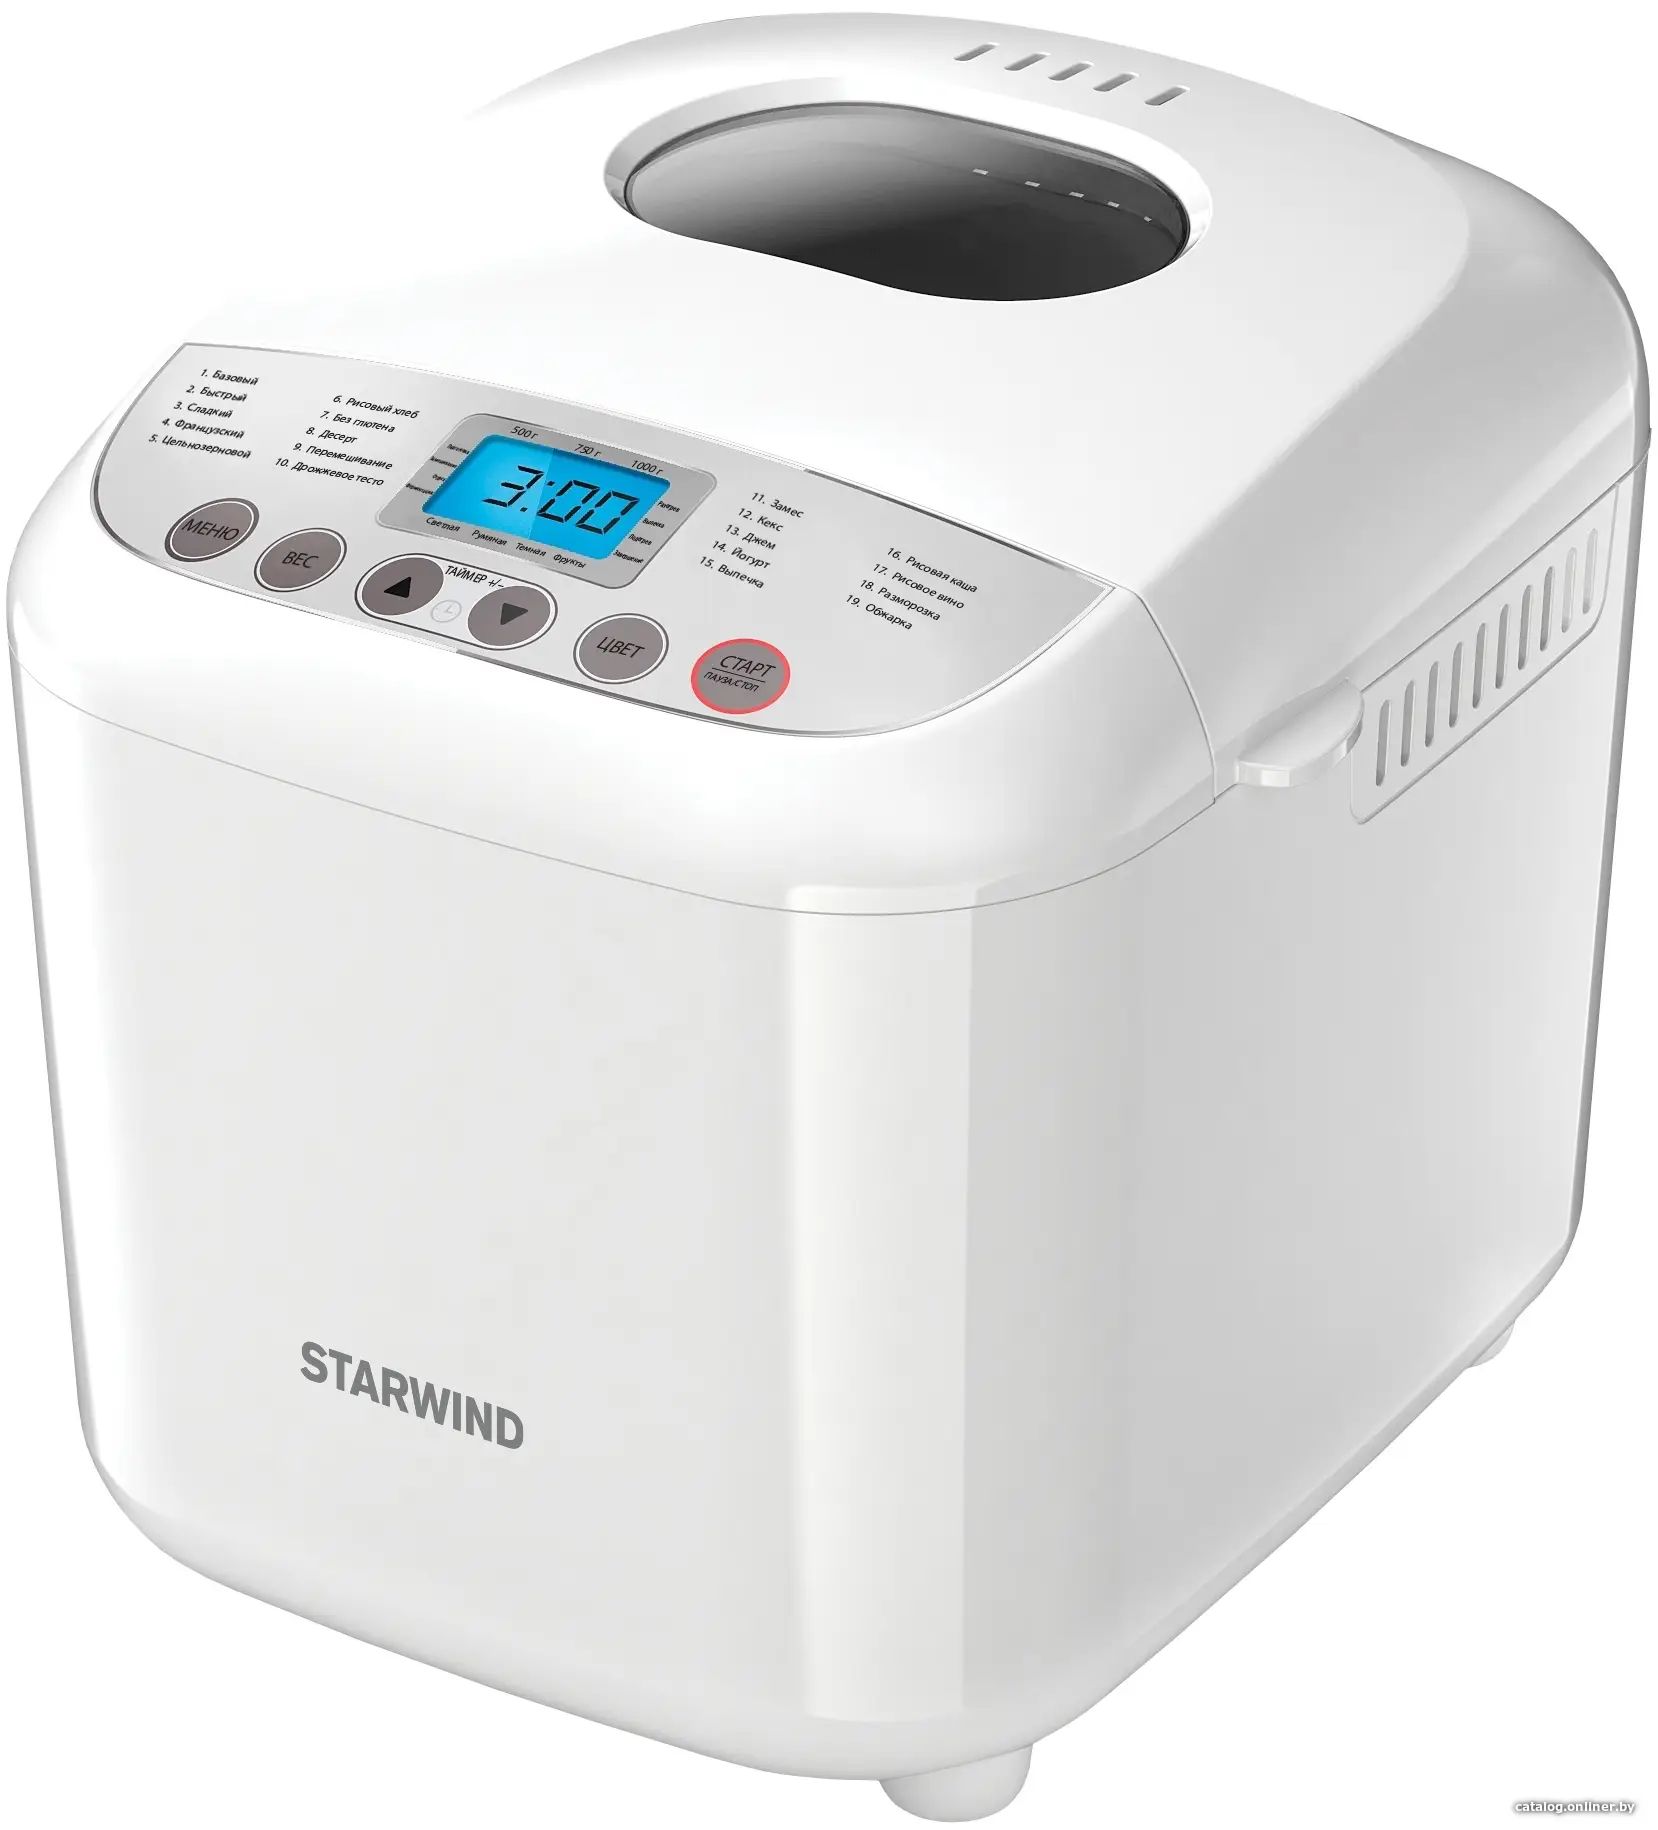 Купить Хлебопечь Starwind SBM2085 белый/серебристый, цена, опт и розница